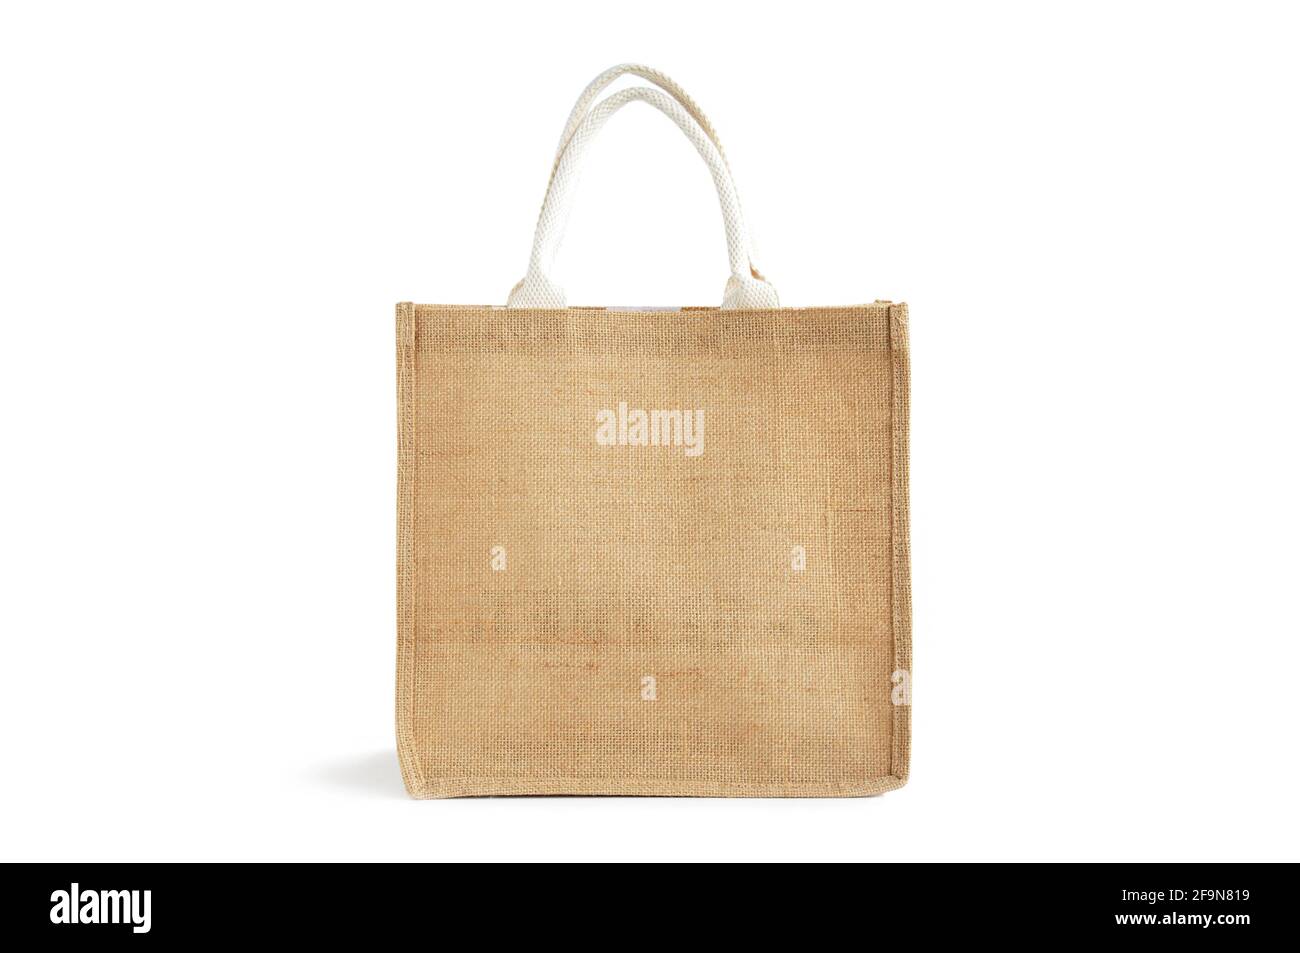 Hessischer oder Jute Bag - wiederverwendbarer brauner Einkaufstasche mit Schlaufengriffe - isoliert Stockfoto